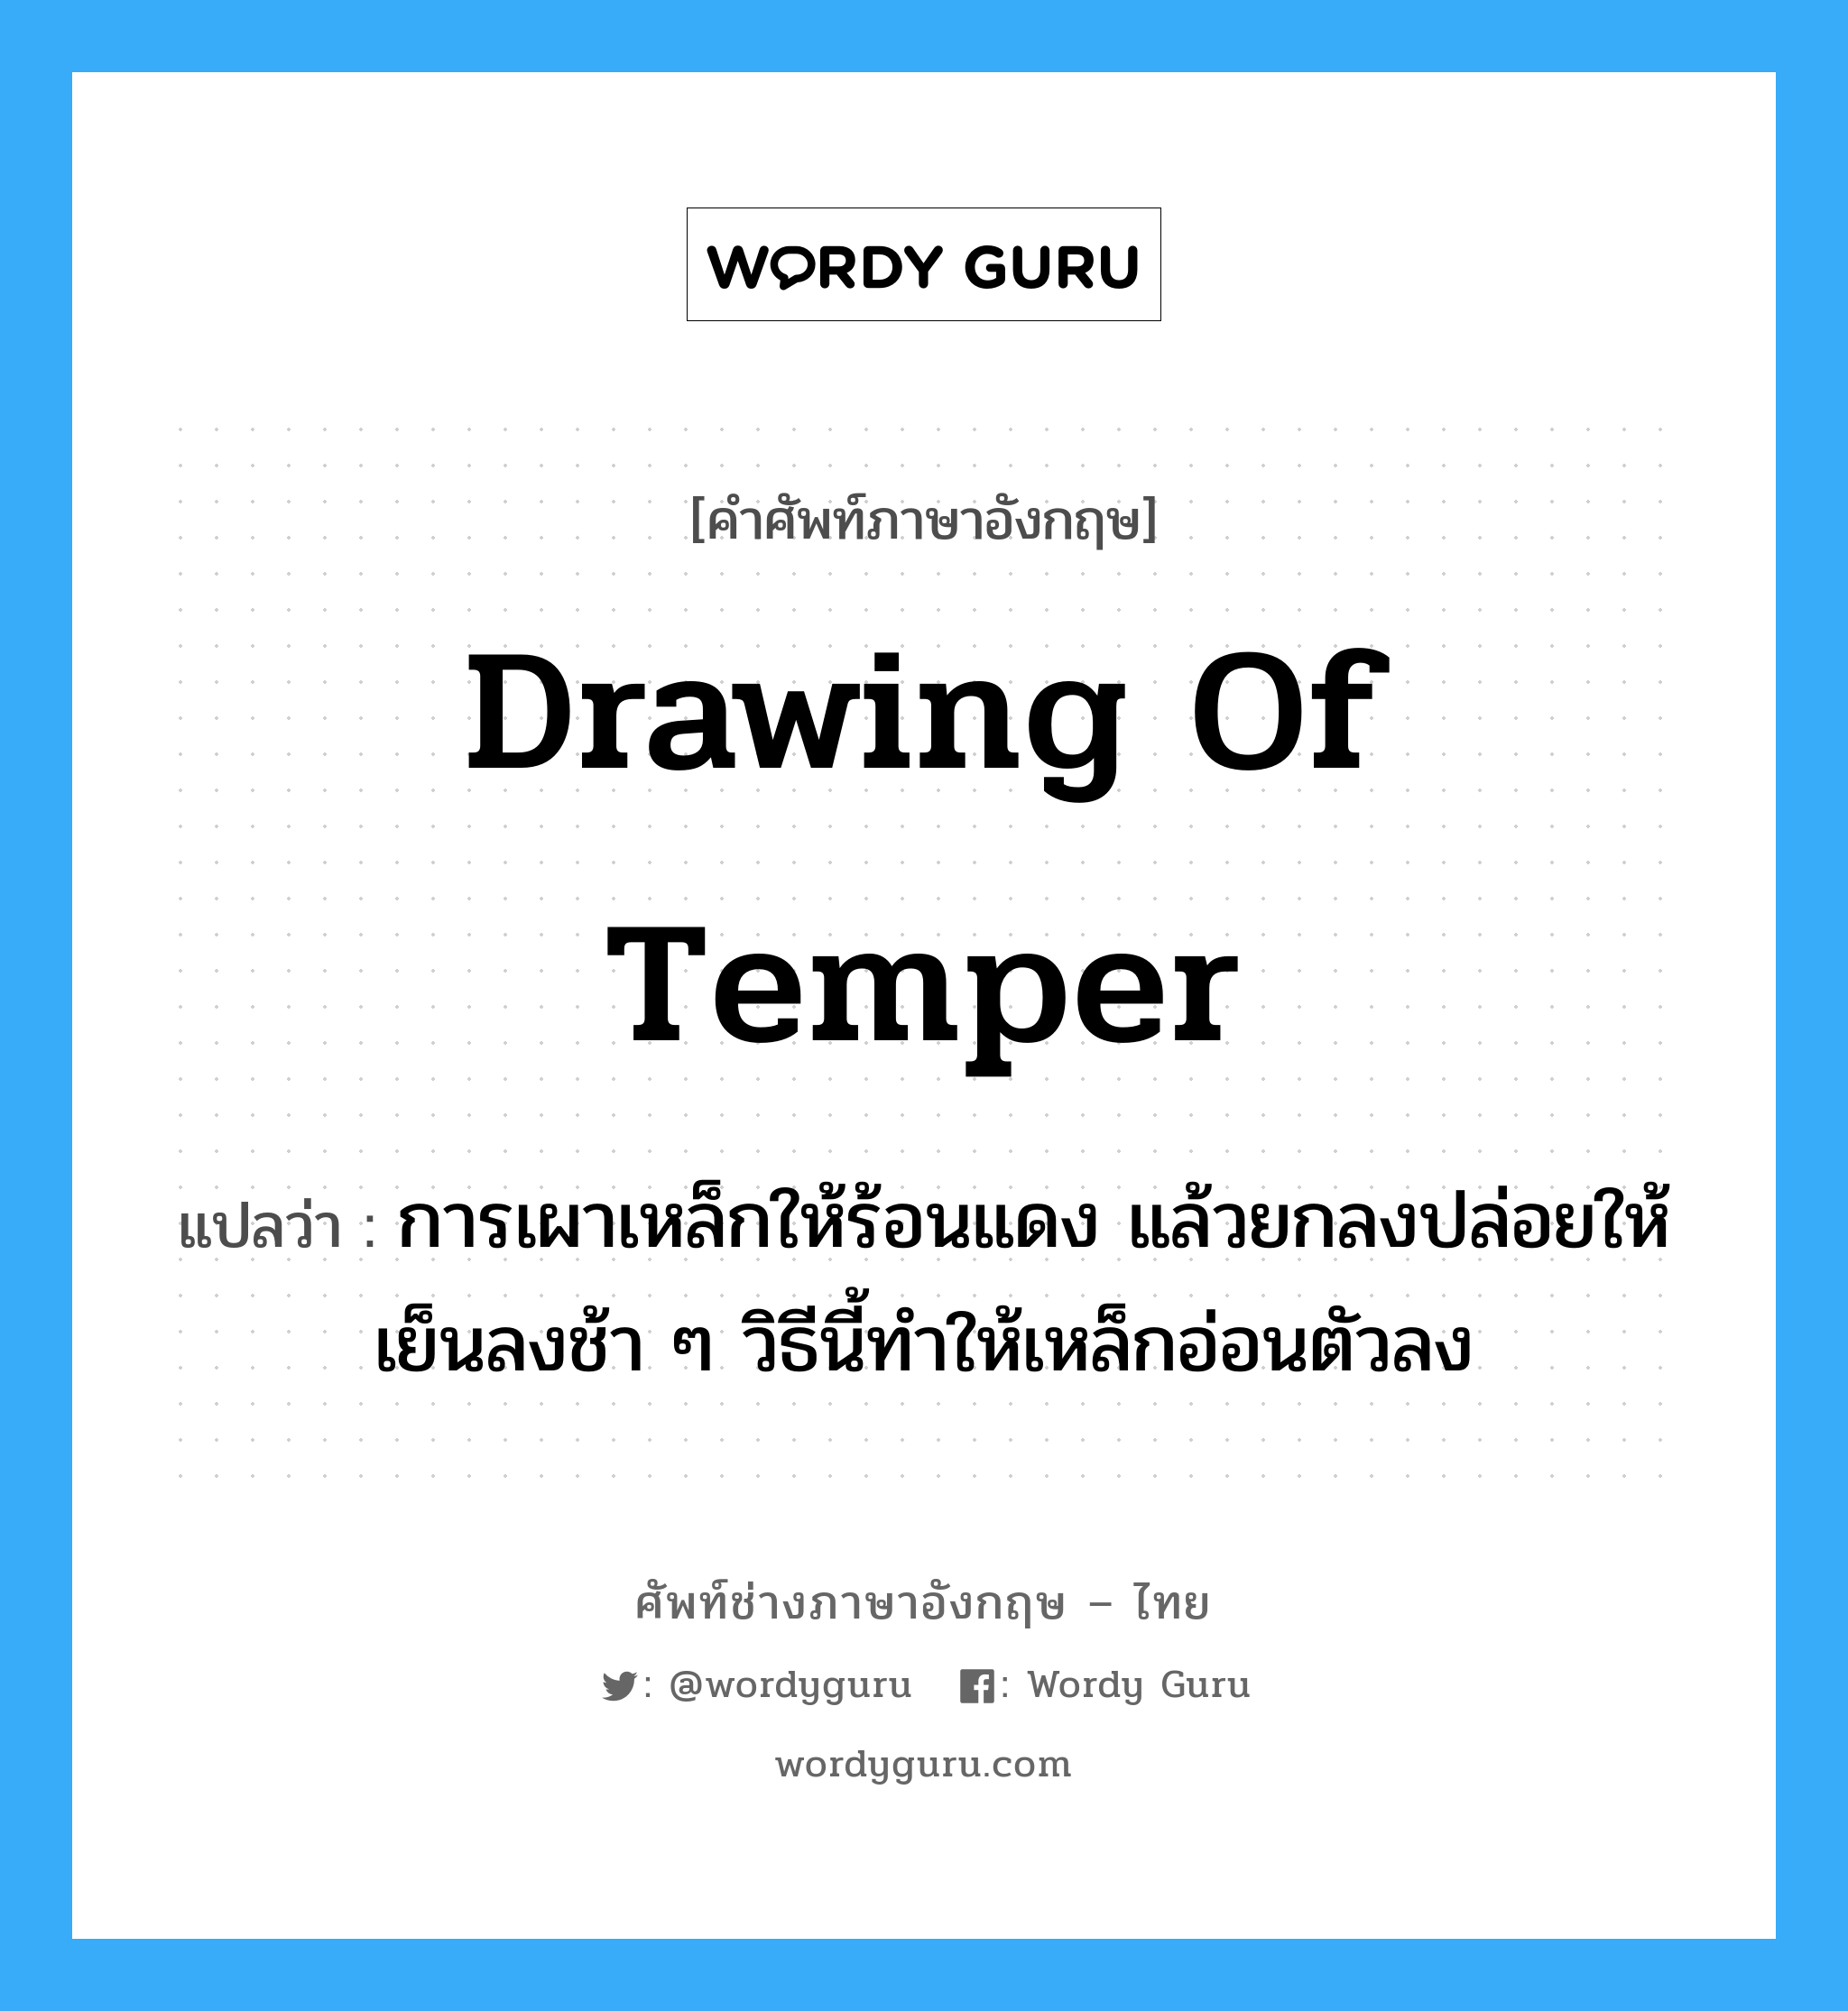 drawing of temper แปลว่า?, คำศัพท์ช่างภาษาอังกฤษ - ไทย drawing of temper คำศัพท์ภาษาอังกฤษ drawing of temper แปลว่า การเผาเหล็กให้ร้อนแดง แล้วยกลงปล่อยให้เย็นลงช้า ๆ วิธีนี้ทำให้เหล็กอ่อนตัวลง